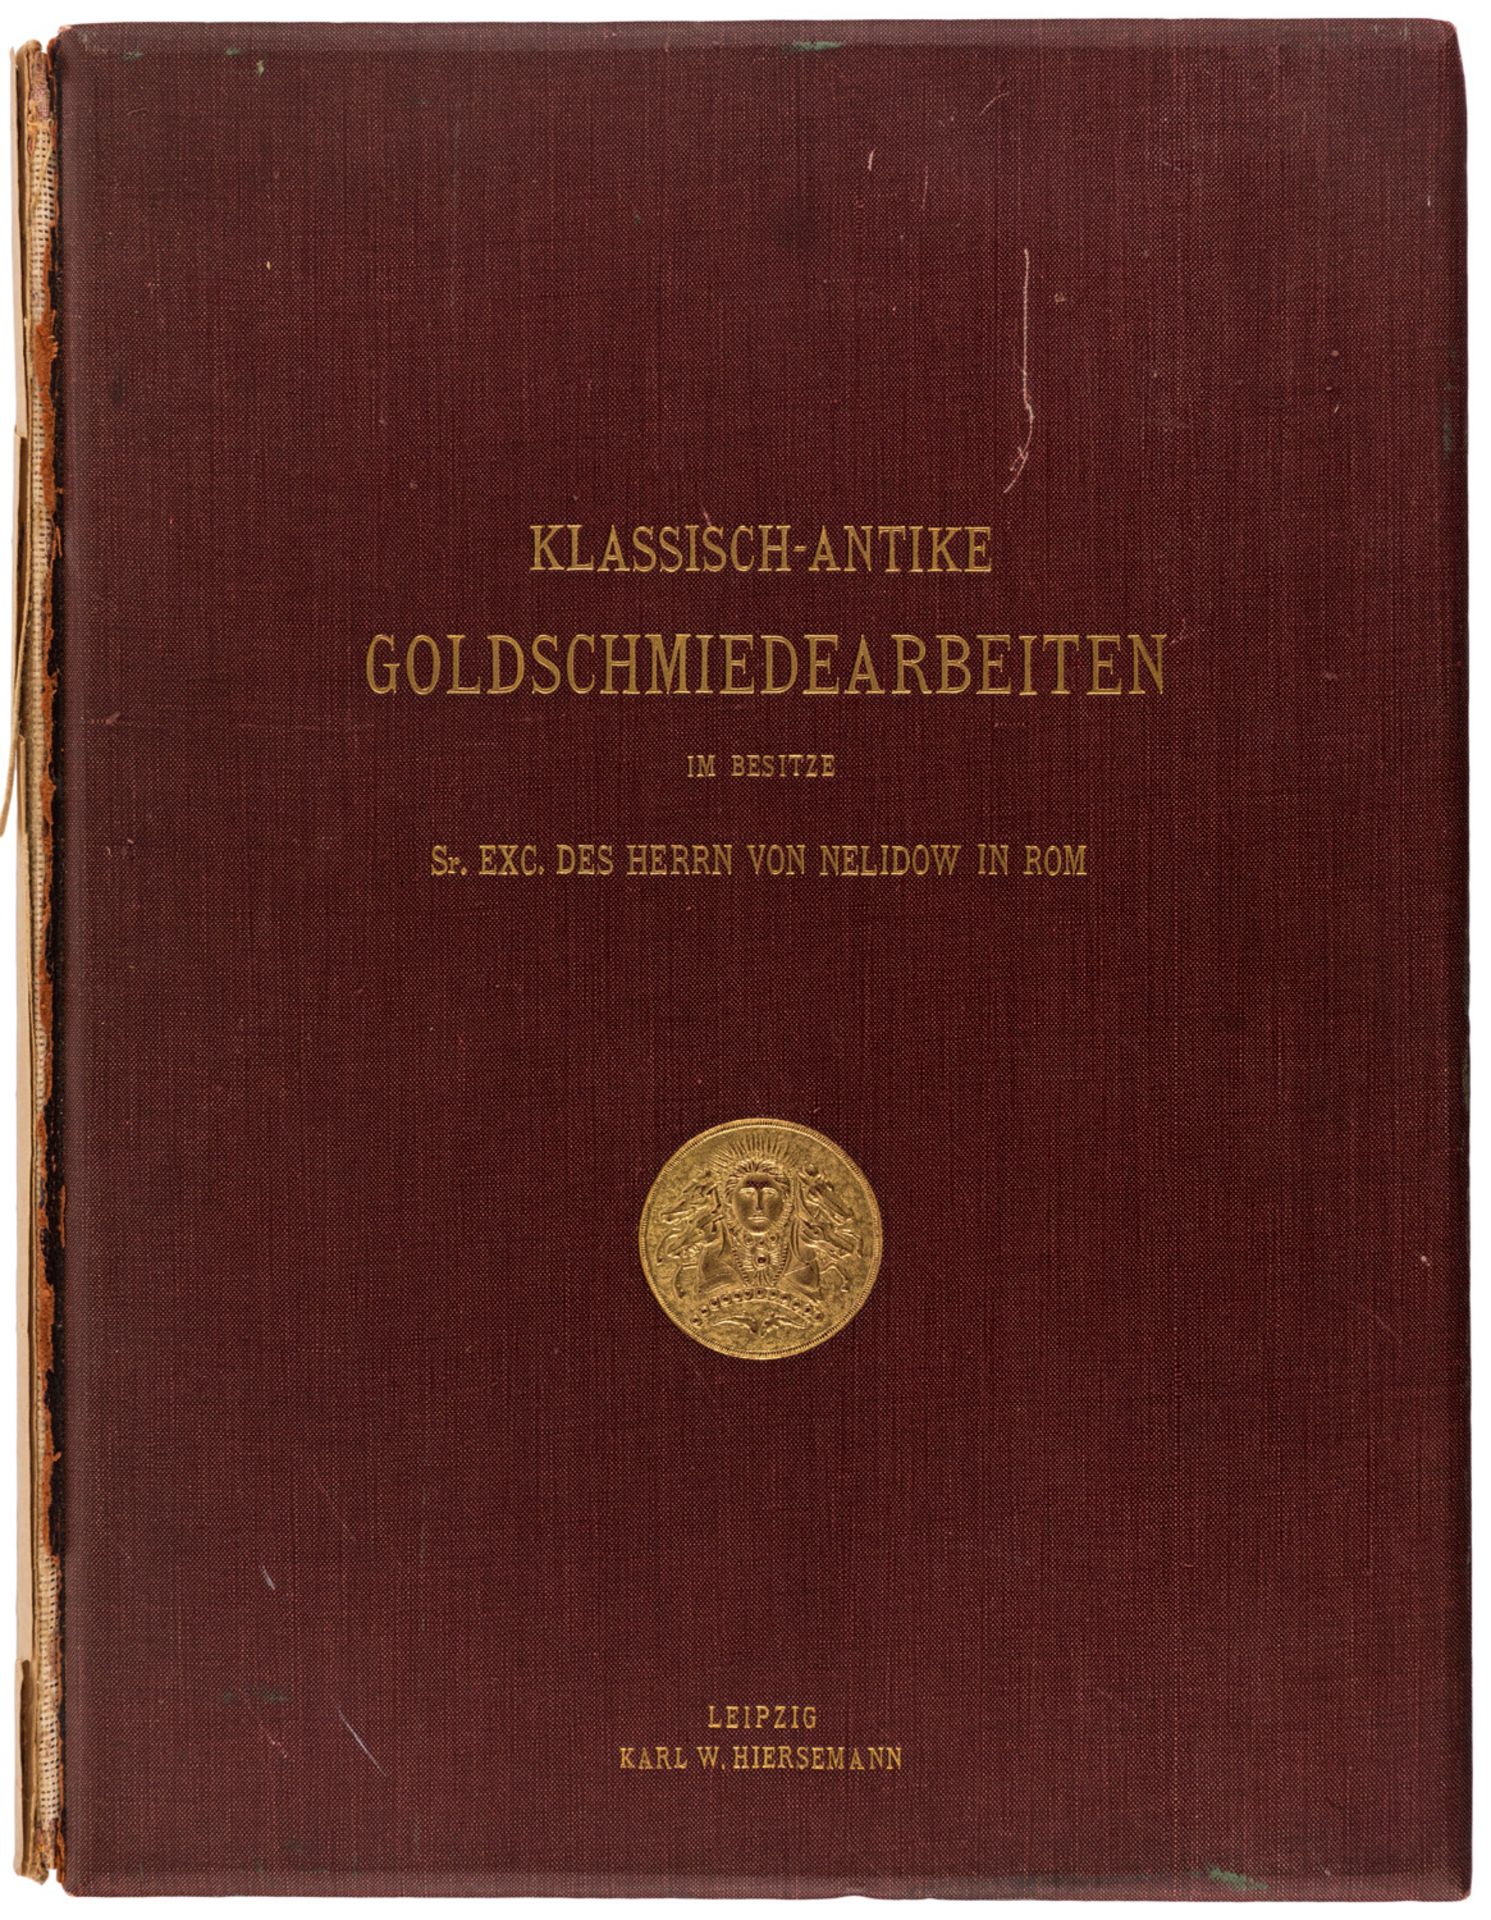 KLASSICH-ANTIKE GOLDSCHMIEDEARBEITEN IM BESITZE A.J. VON NELIDOW, 1903